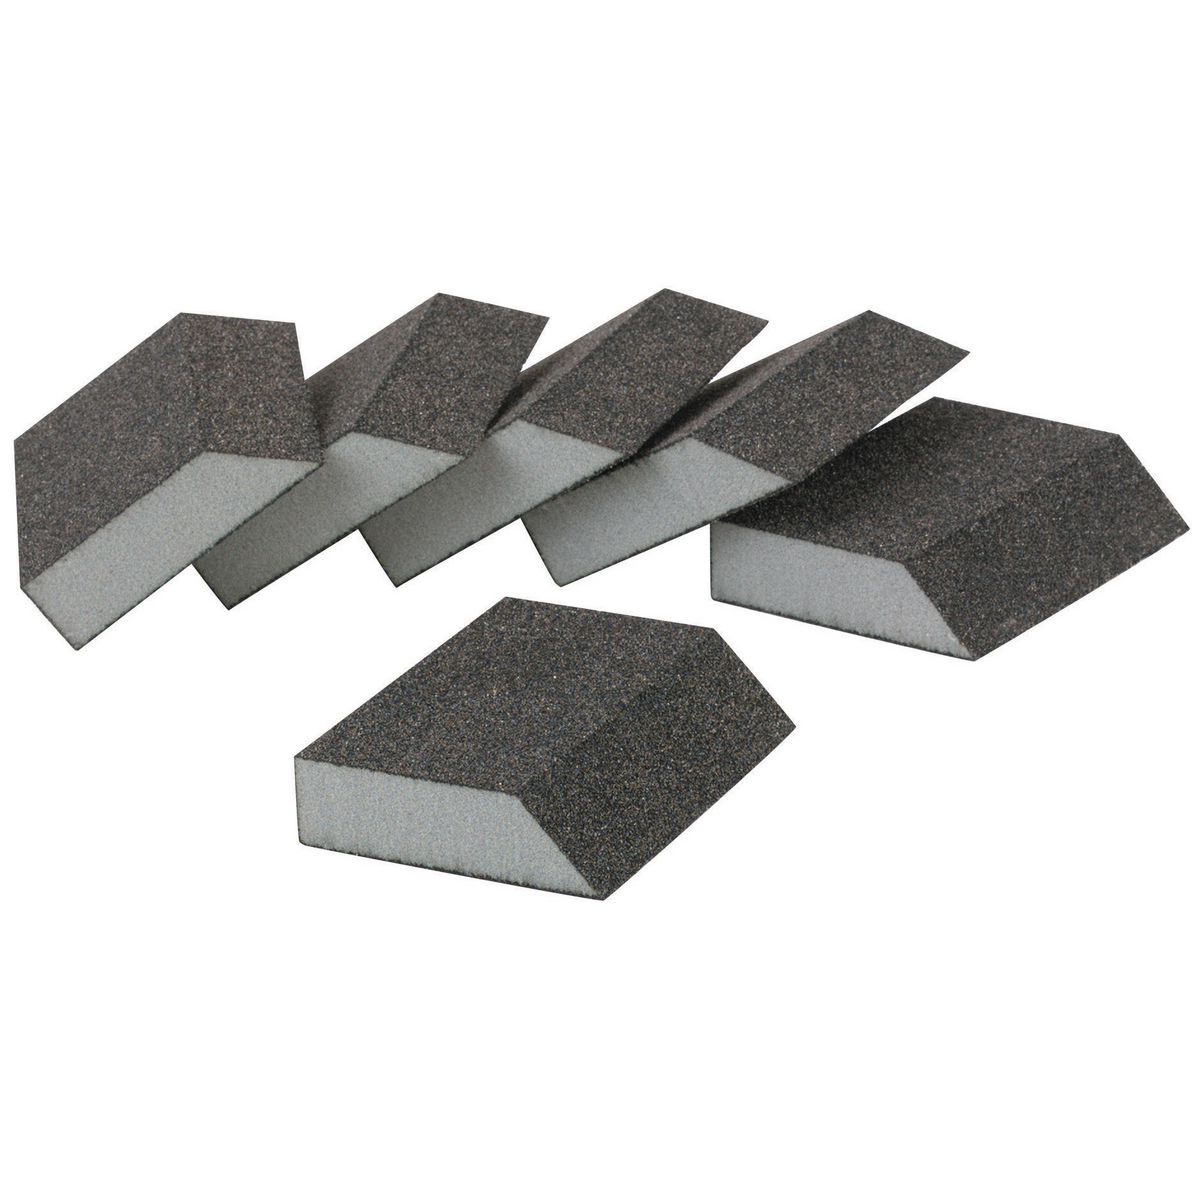 WARRIOR Aluminum Oxide Angled Sanding Sponges - Fine Grade 6 Pk. - Item 63914 / 90313